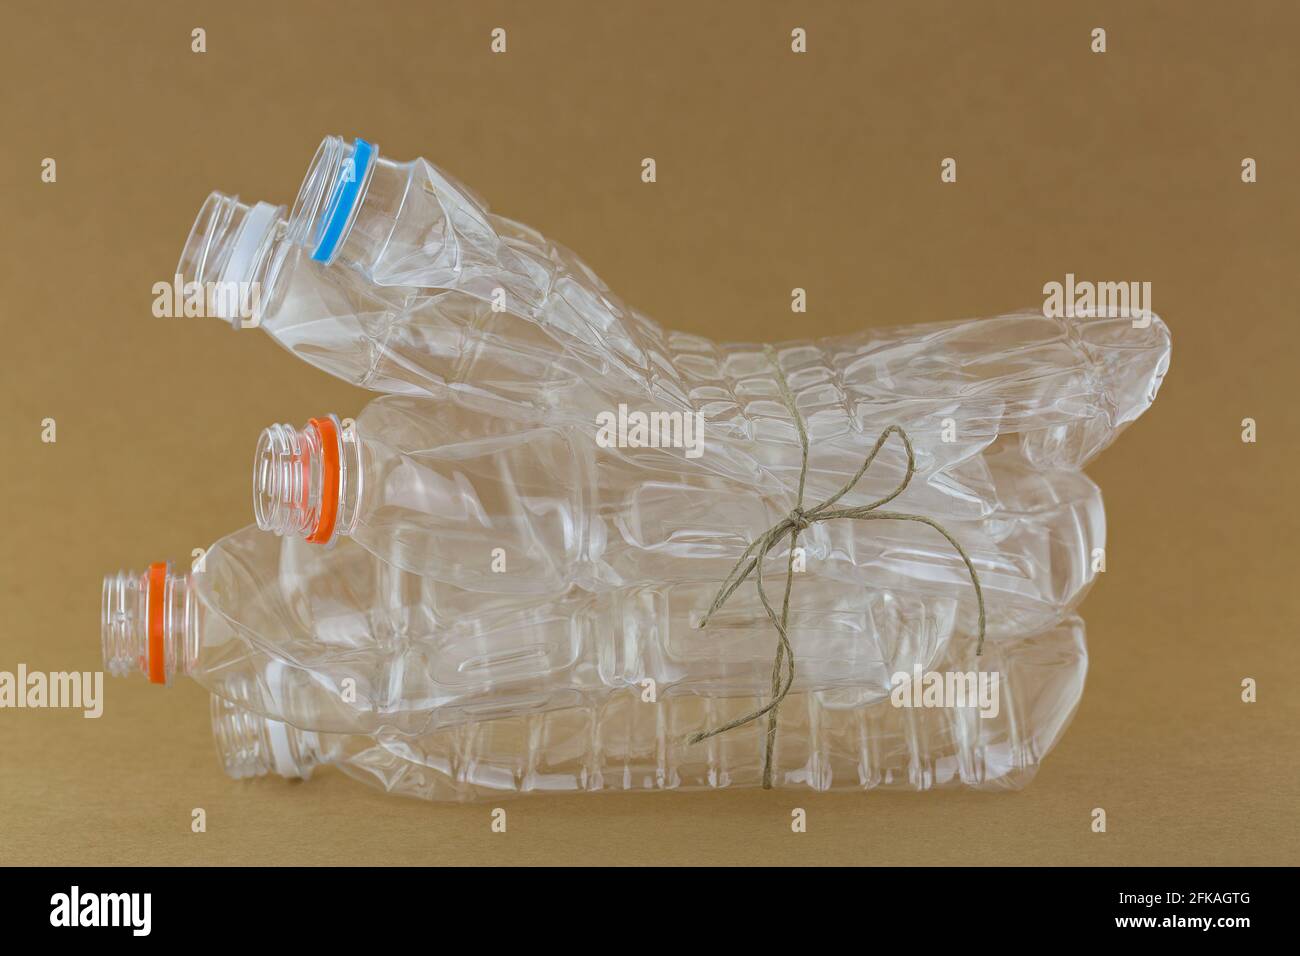 Stapel leerer, recycelbarer, klarer Kunststoff-Mineralwasser-Flaschen Auf braunem Hintergrund zusammengebunden Stockfoto